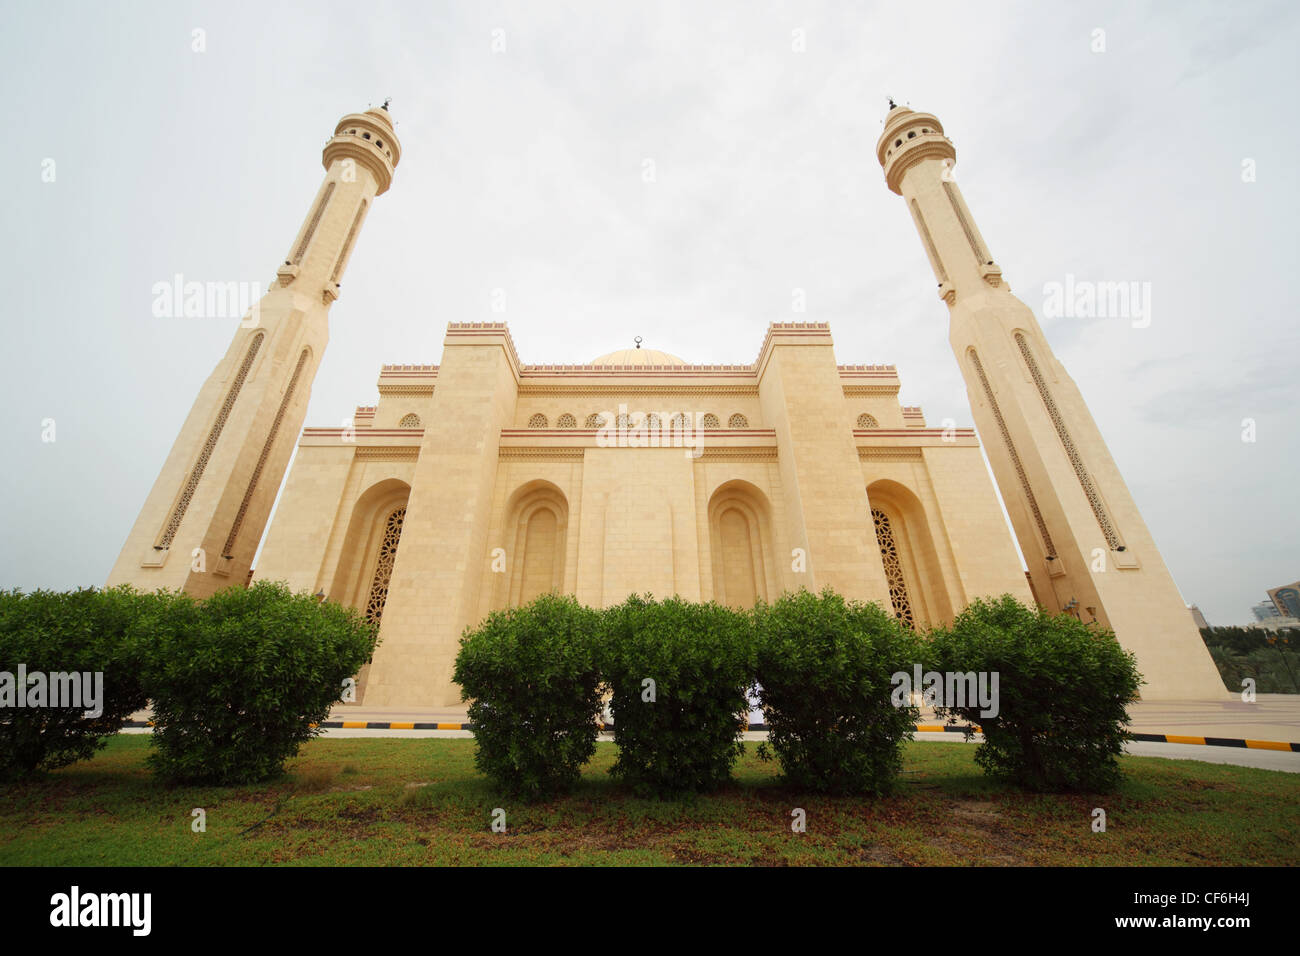 BAHRAIN 16 APRIL: Al-Fateh Grand Moschee nationale islamische Architektur Gebüsch vor allgemeinen anzeigen 16. April 2010 in Bahrain Stockfoto